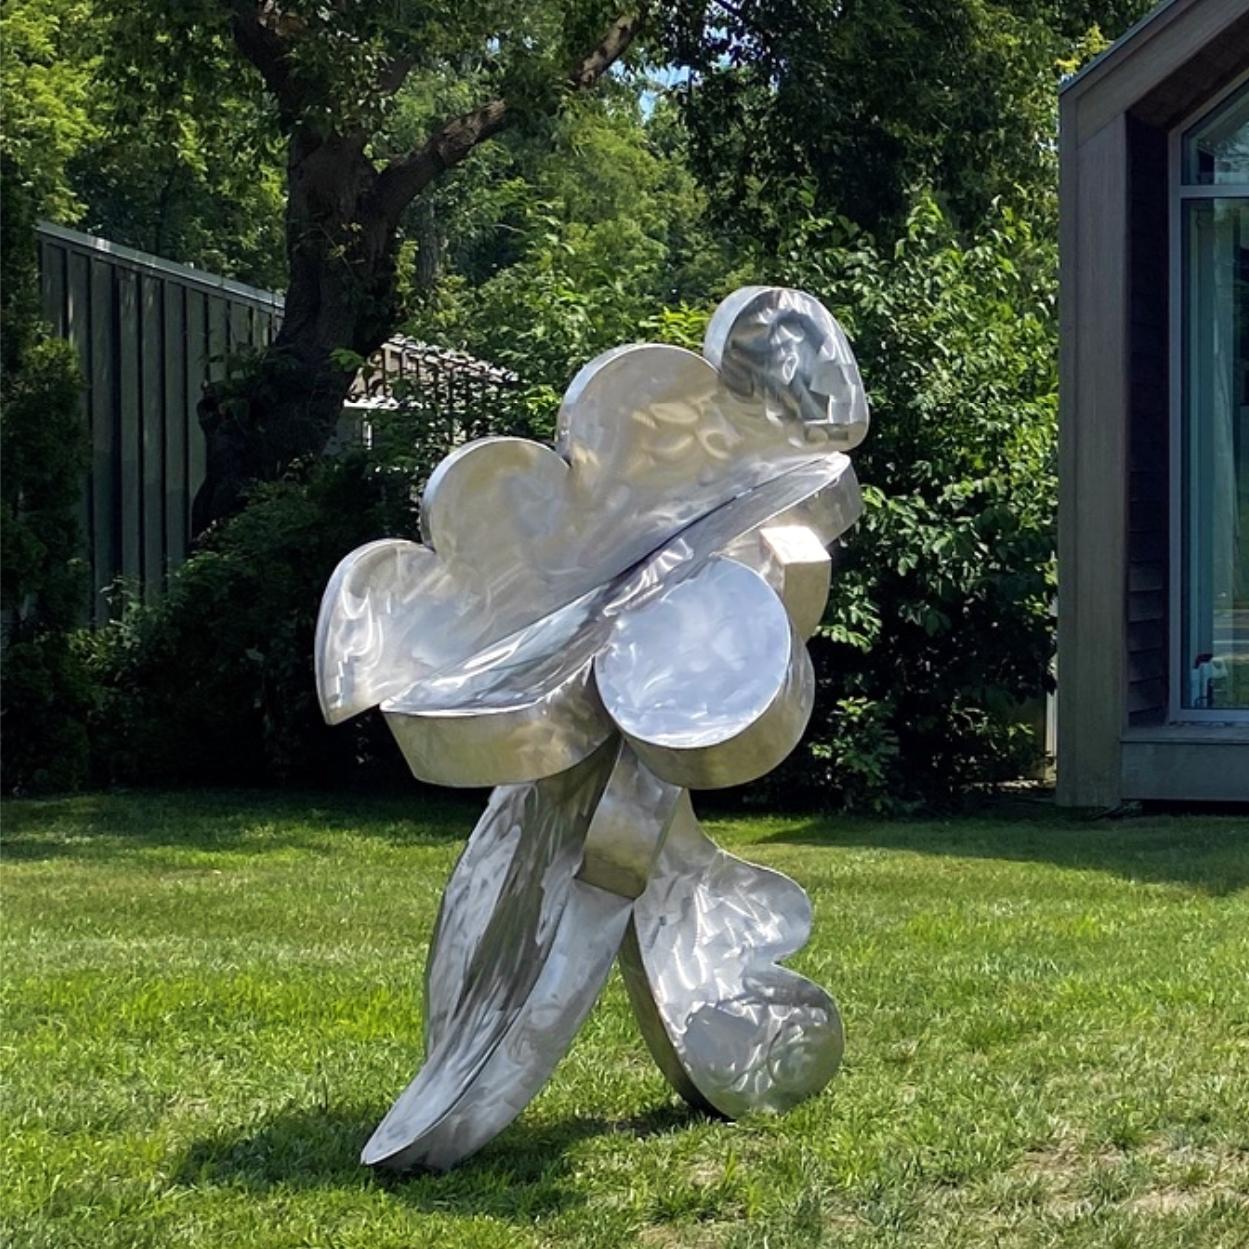 Hans Van de Bovenkamp Abstract Sculpture - "Intrepid Cloud" Abstract, Steel Metal Sculpture, Large-Scale, Outdoors